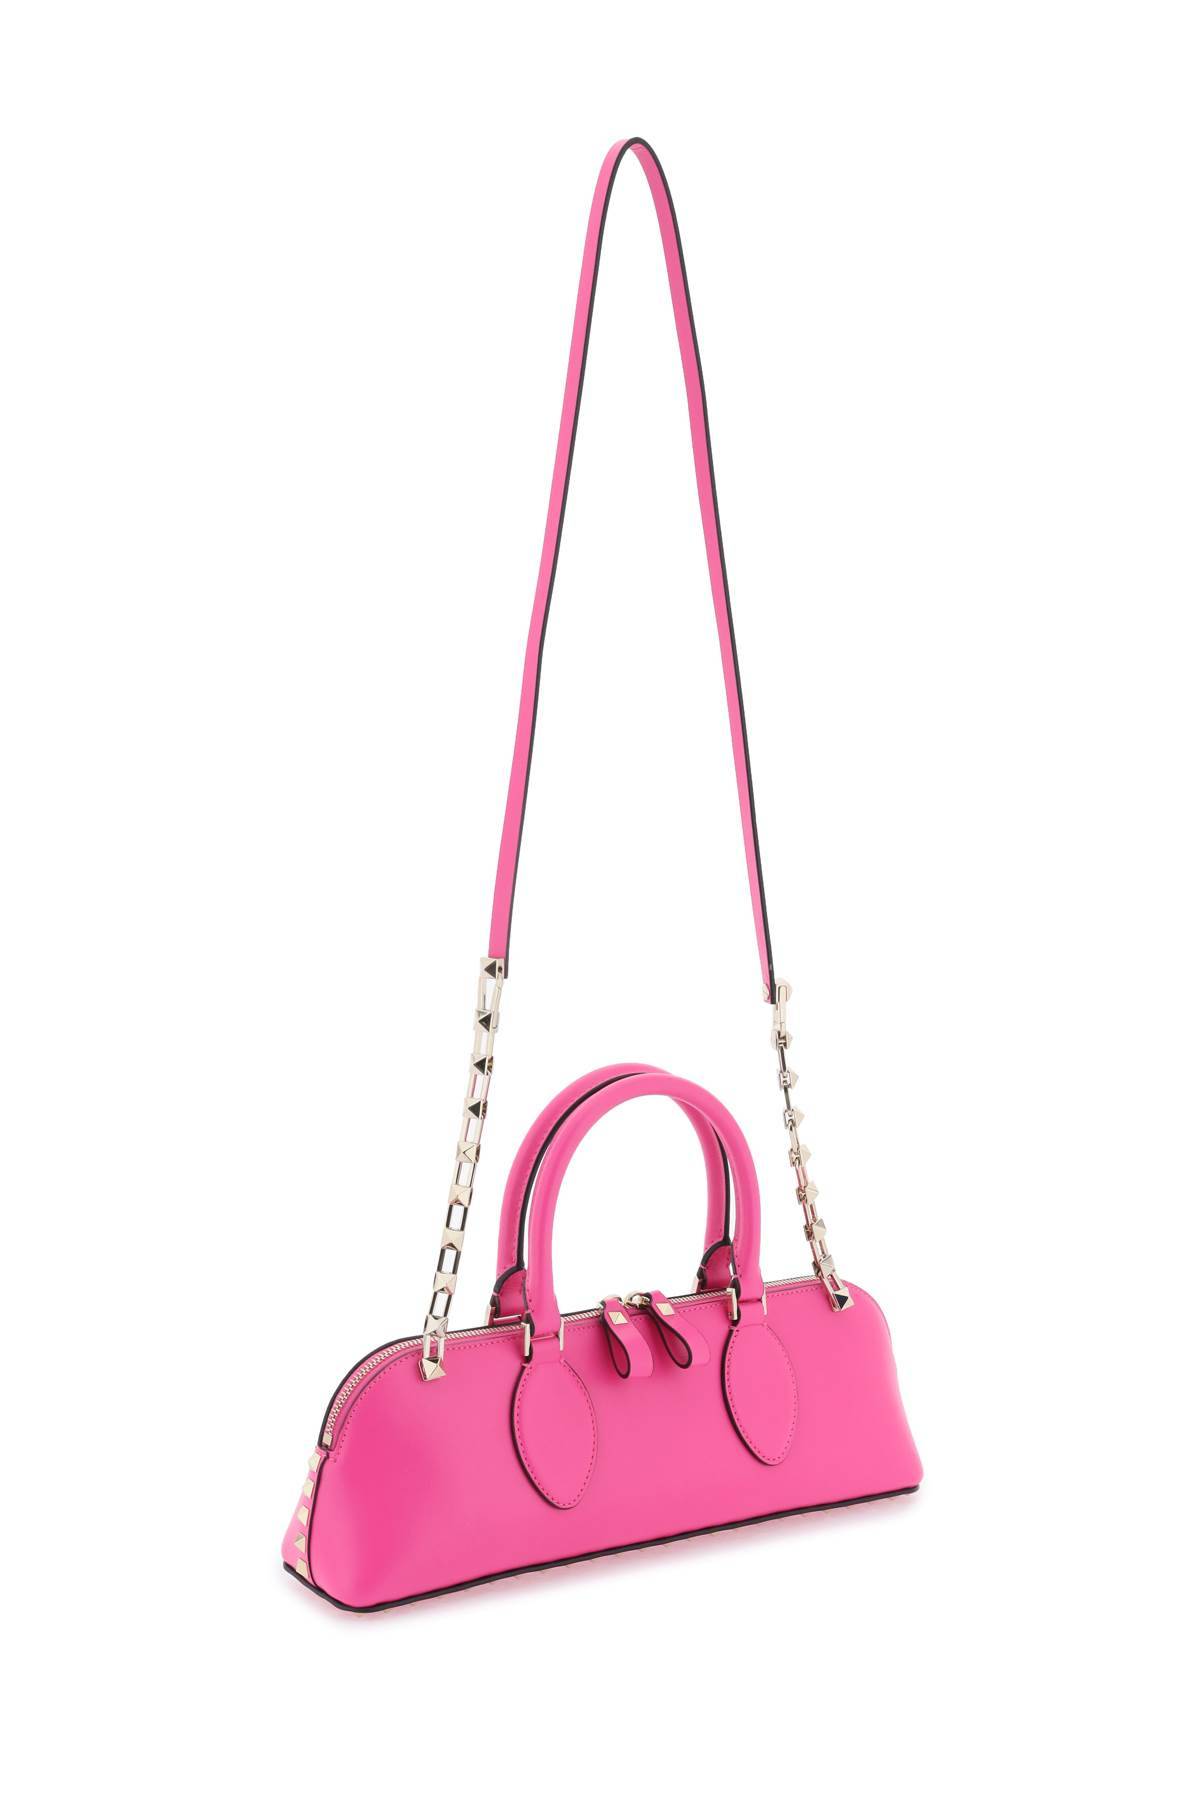 Shop Valentino Rockstud E/w Leather Handbag In Fuchsia